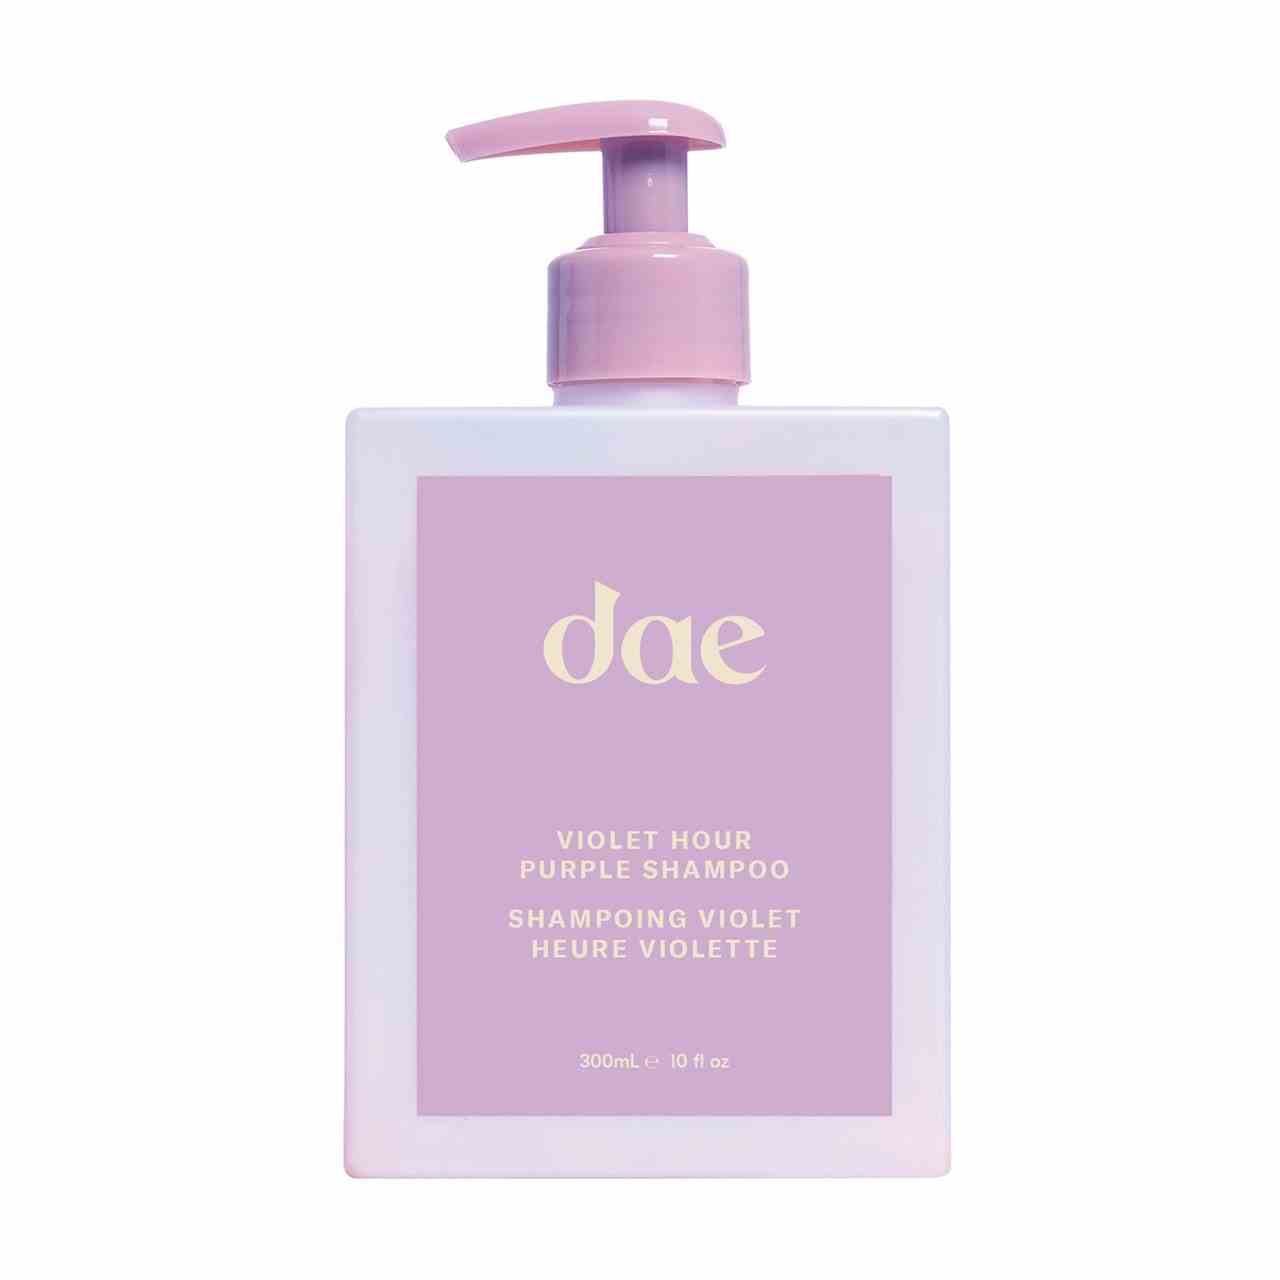 Dae Violet Hour Purple Shampoo quadratische lila Flasche mit lila Pumpe auf weißem Hintergrund